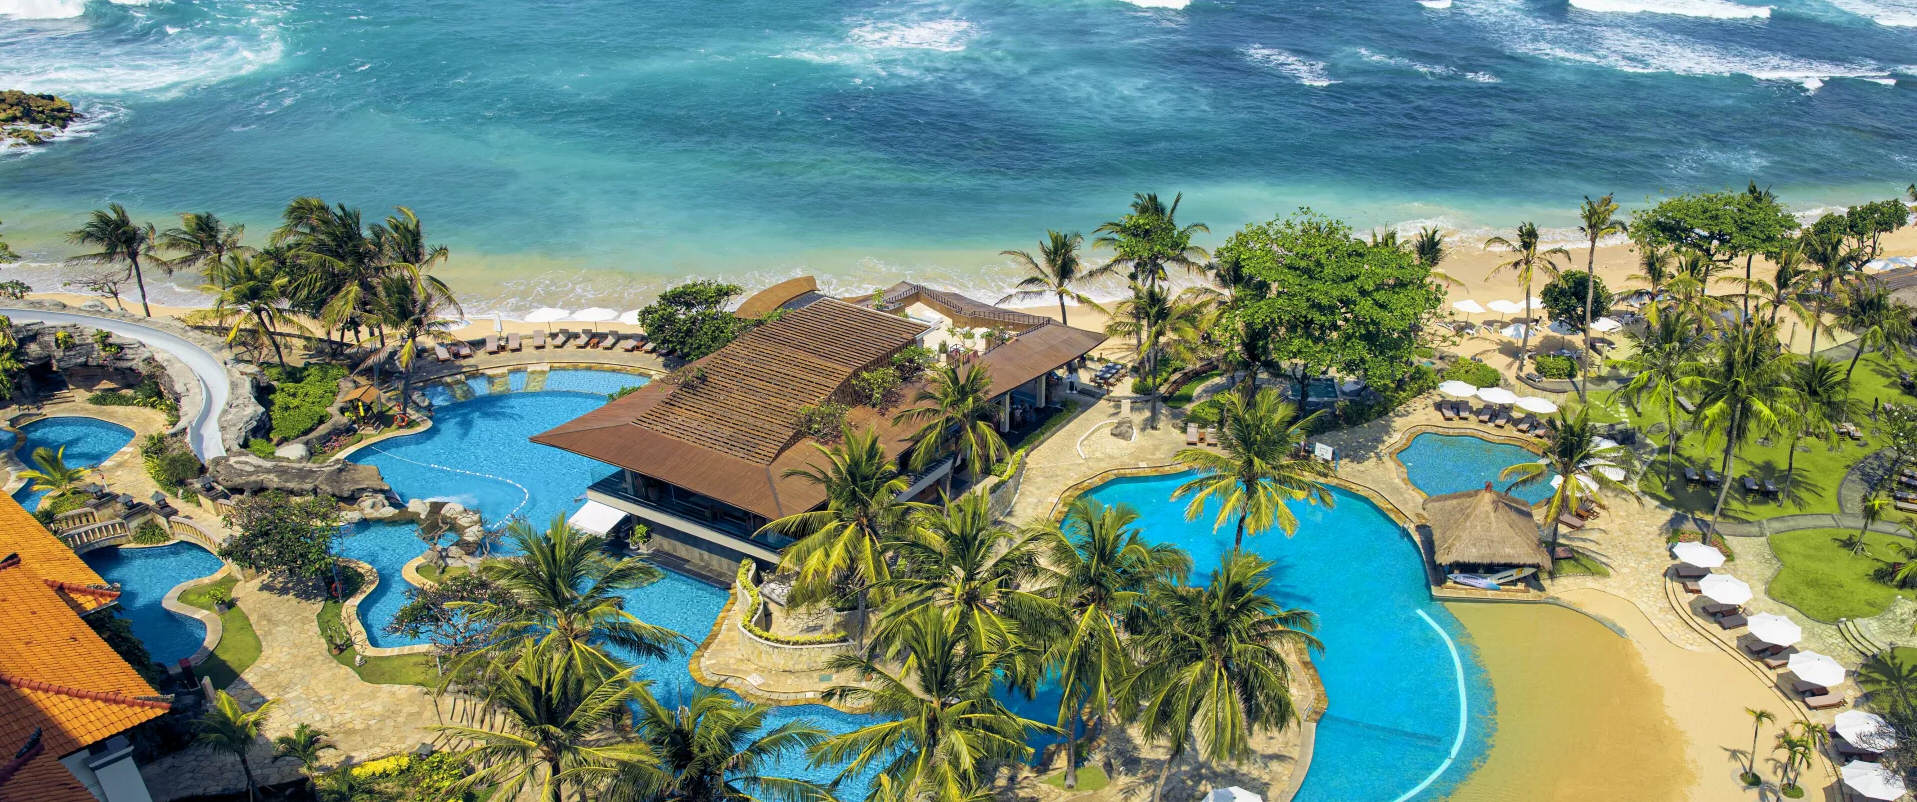 Bali family accommodation